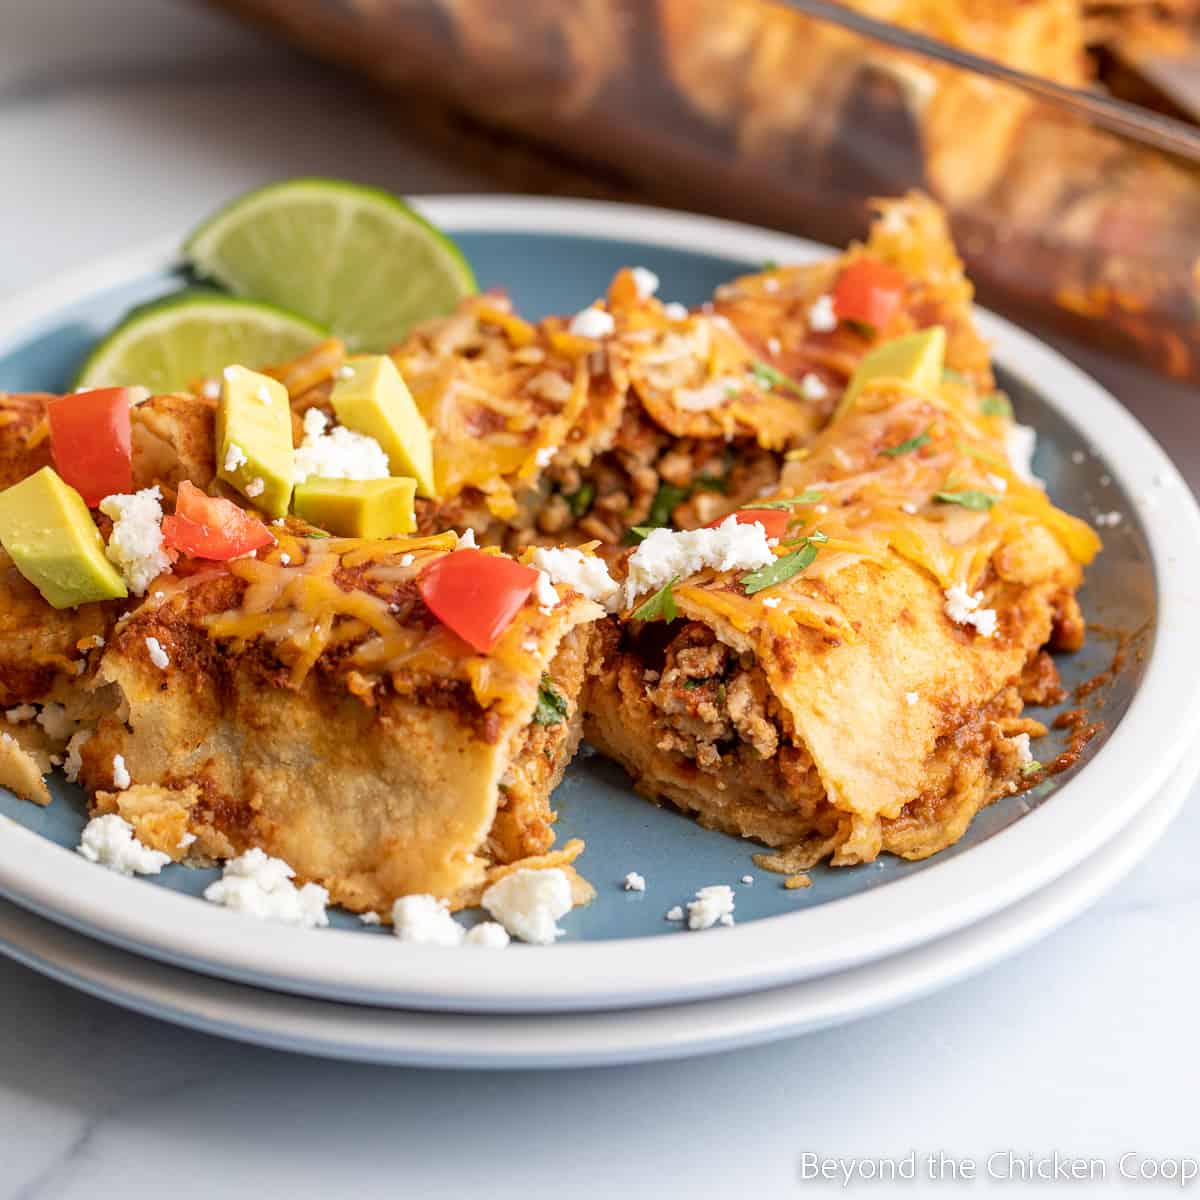 Enchiladas cut in half on a blue plate.